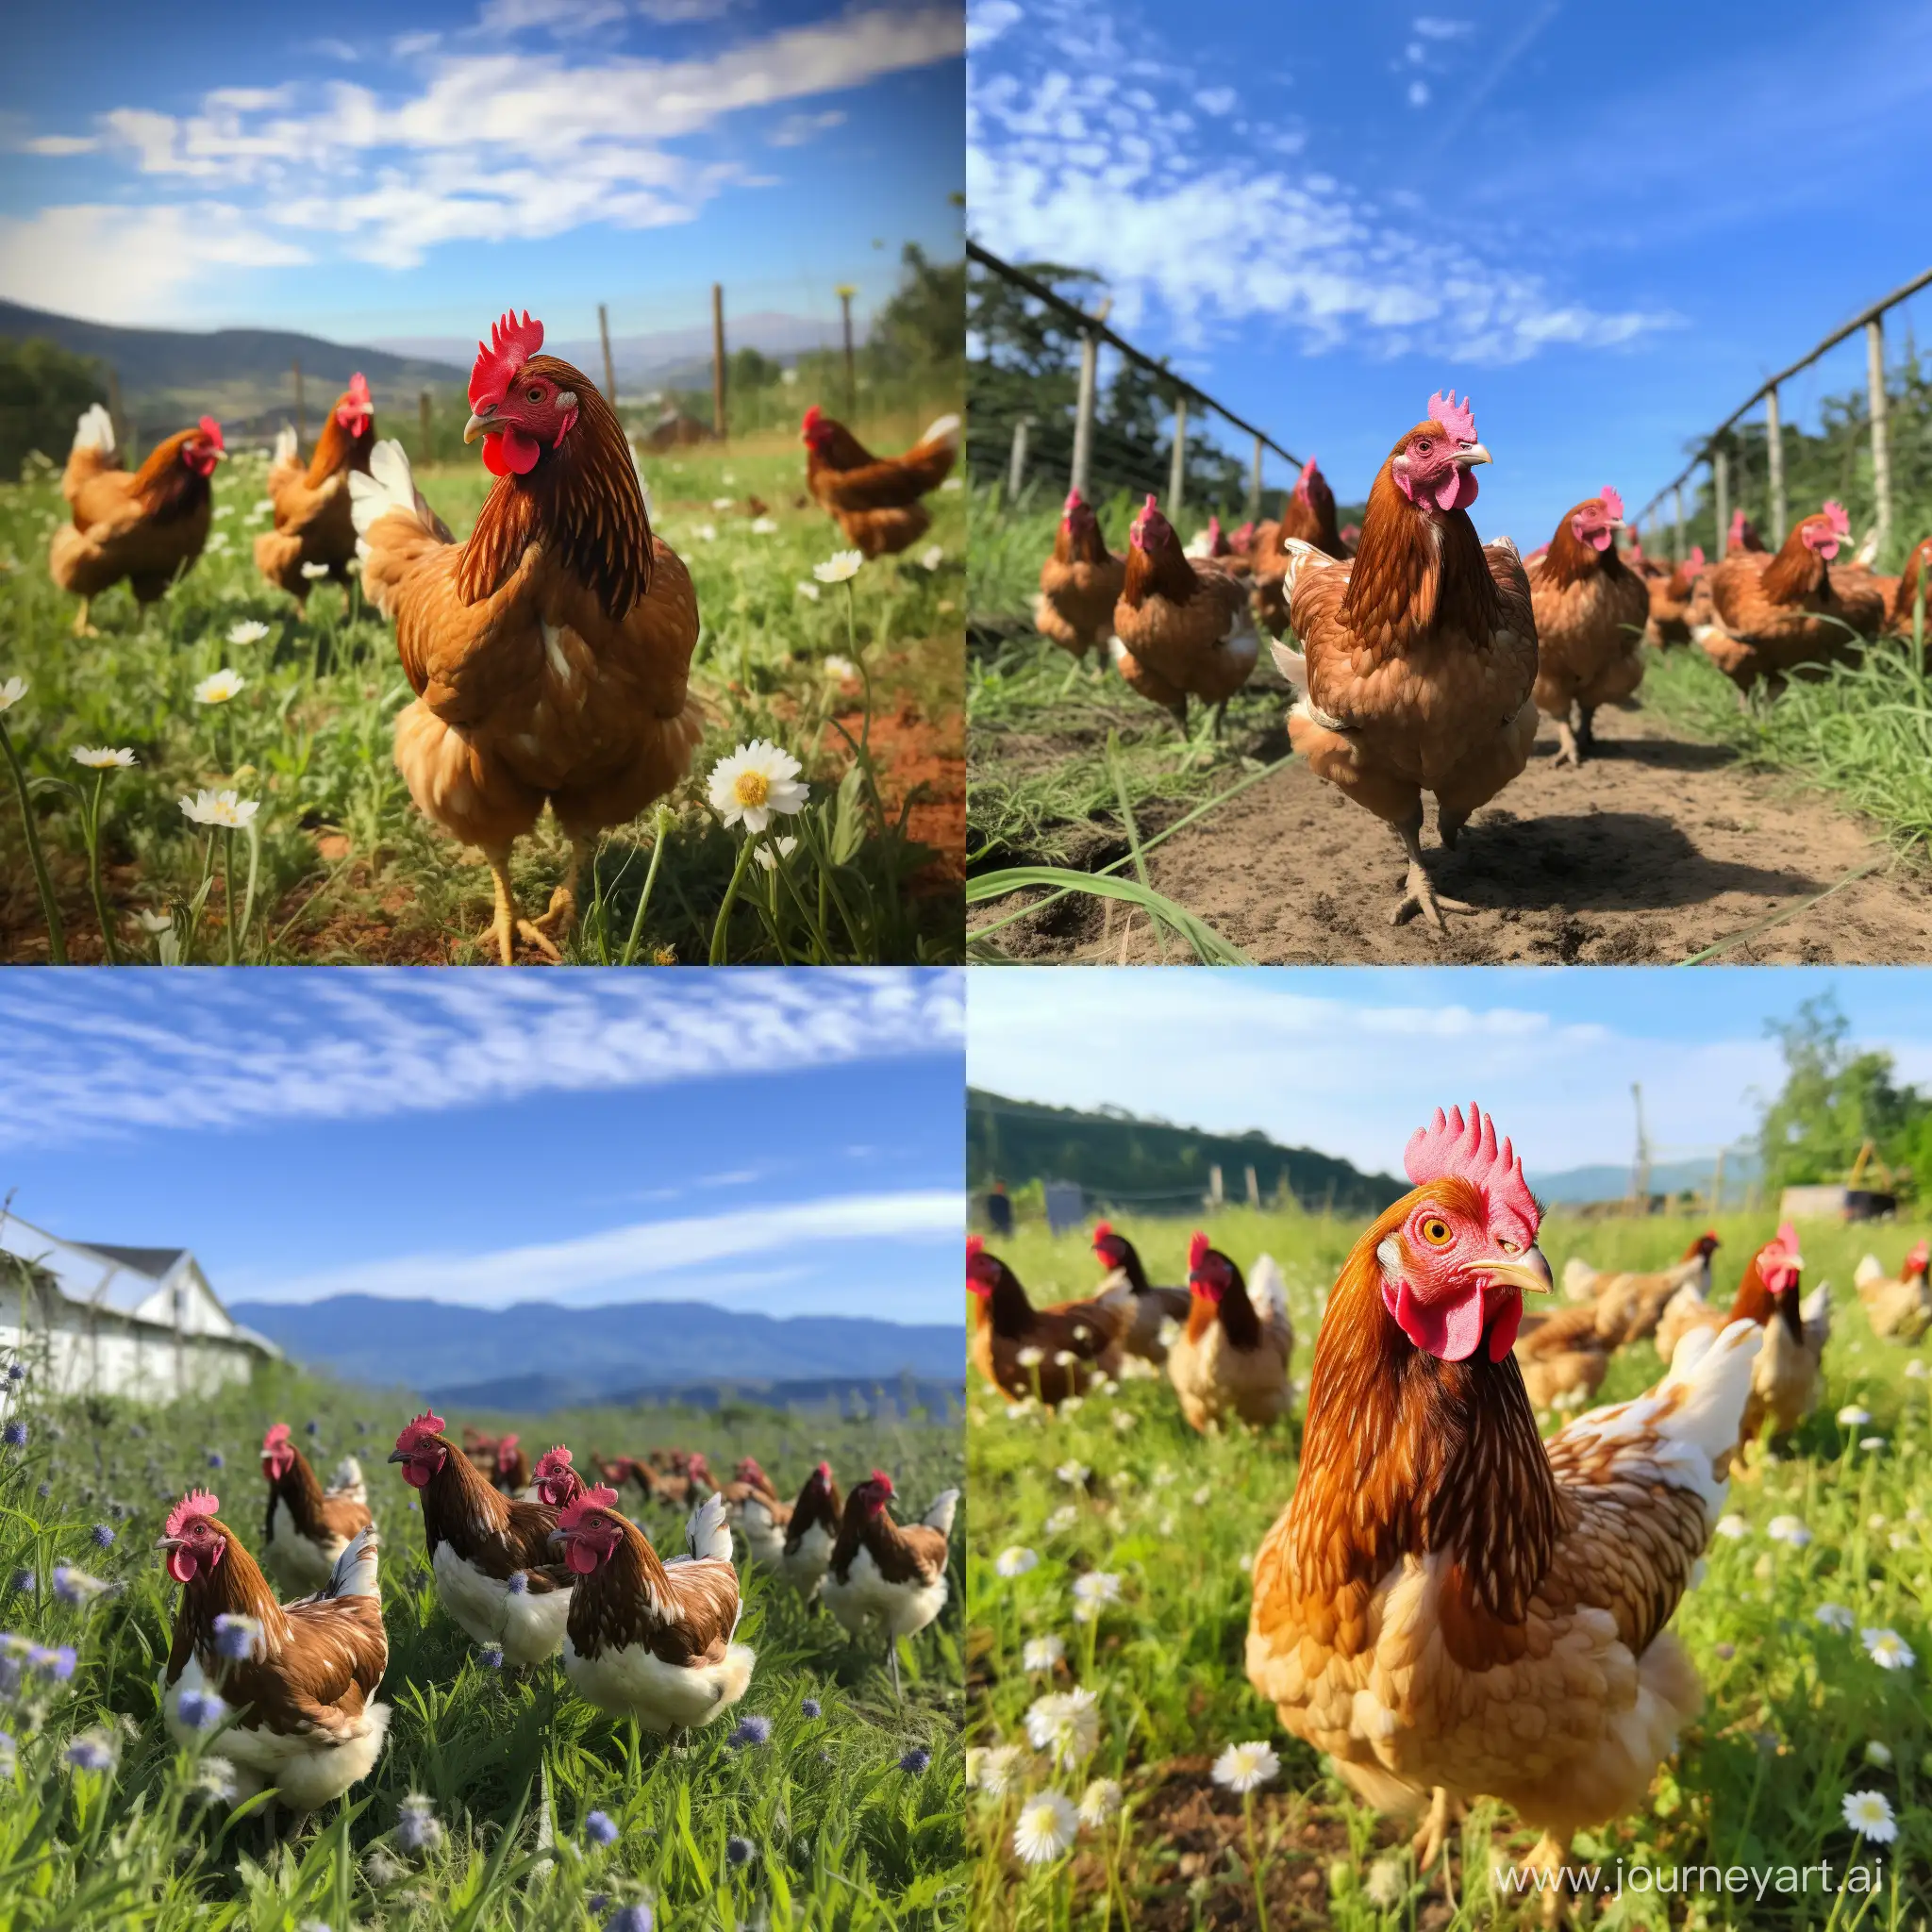 Venta de pollos en transcicion agroecologica pollos de campo